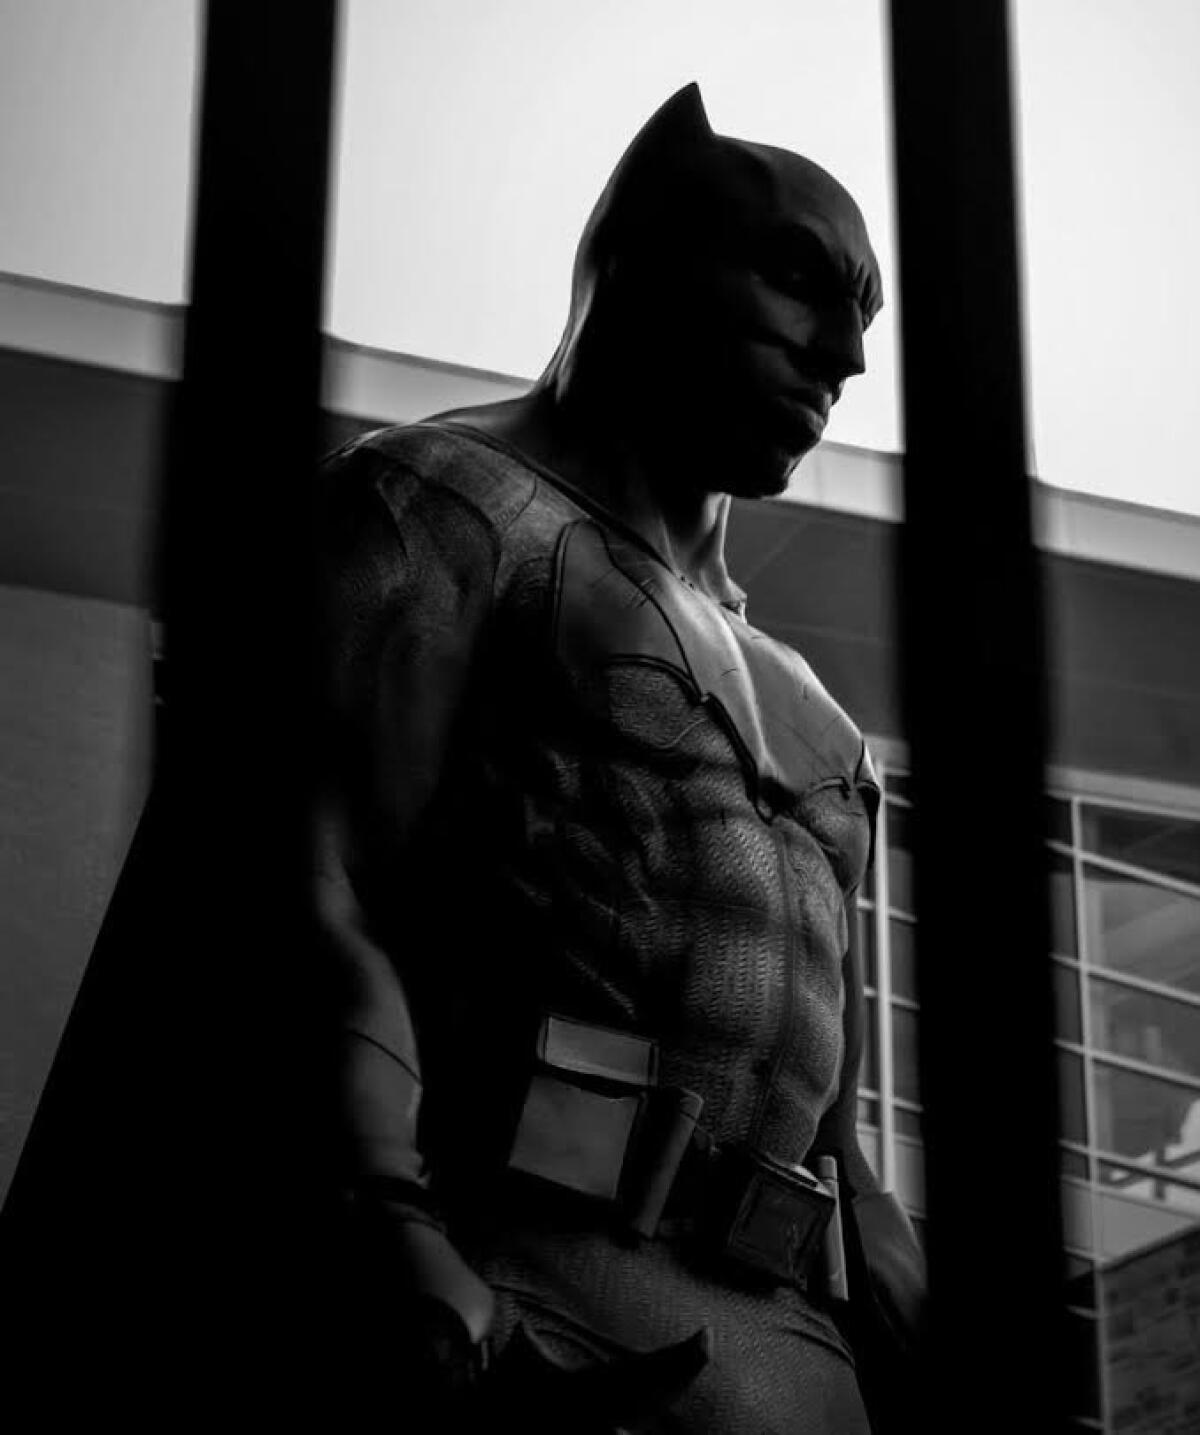 Charles Conley poses as his favorite superhero, Batman.